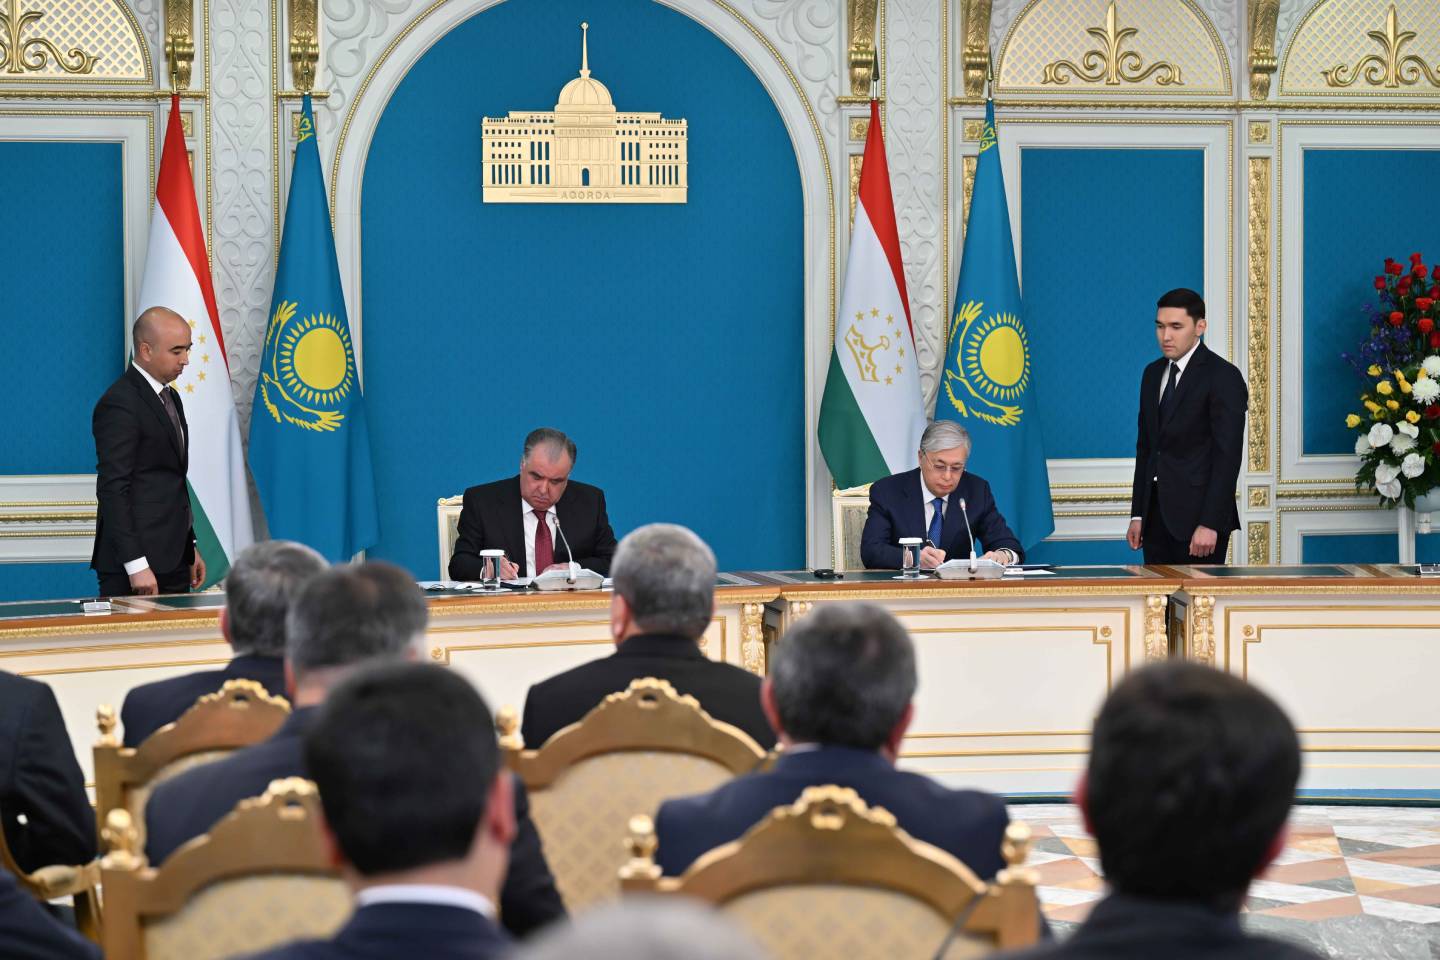 Новости мира / Политика в мире / Касым-Жомарт Токаев встретился с президентом Таджикистана Эмомали Рахмоном